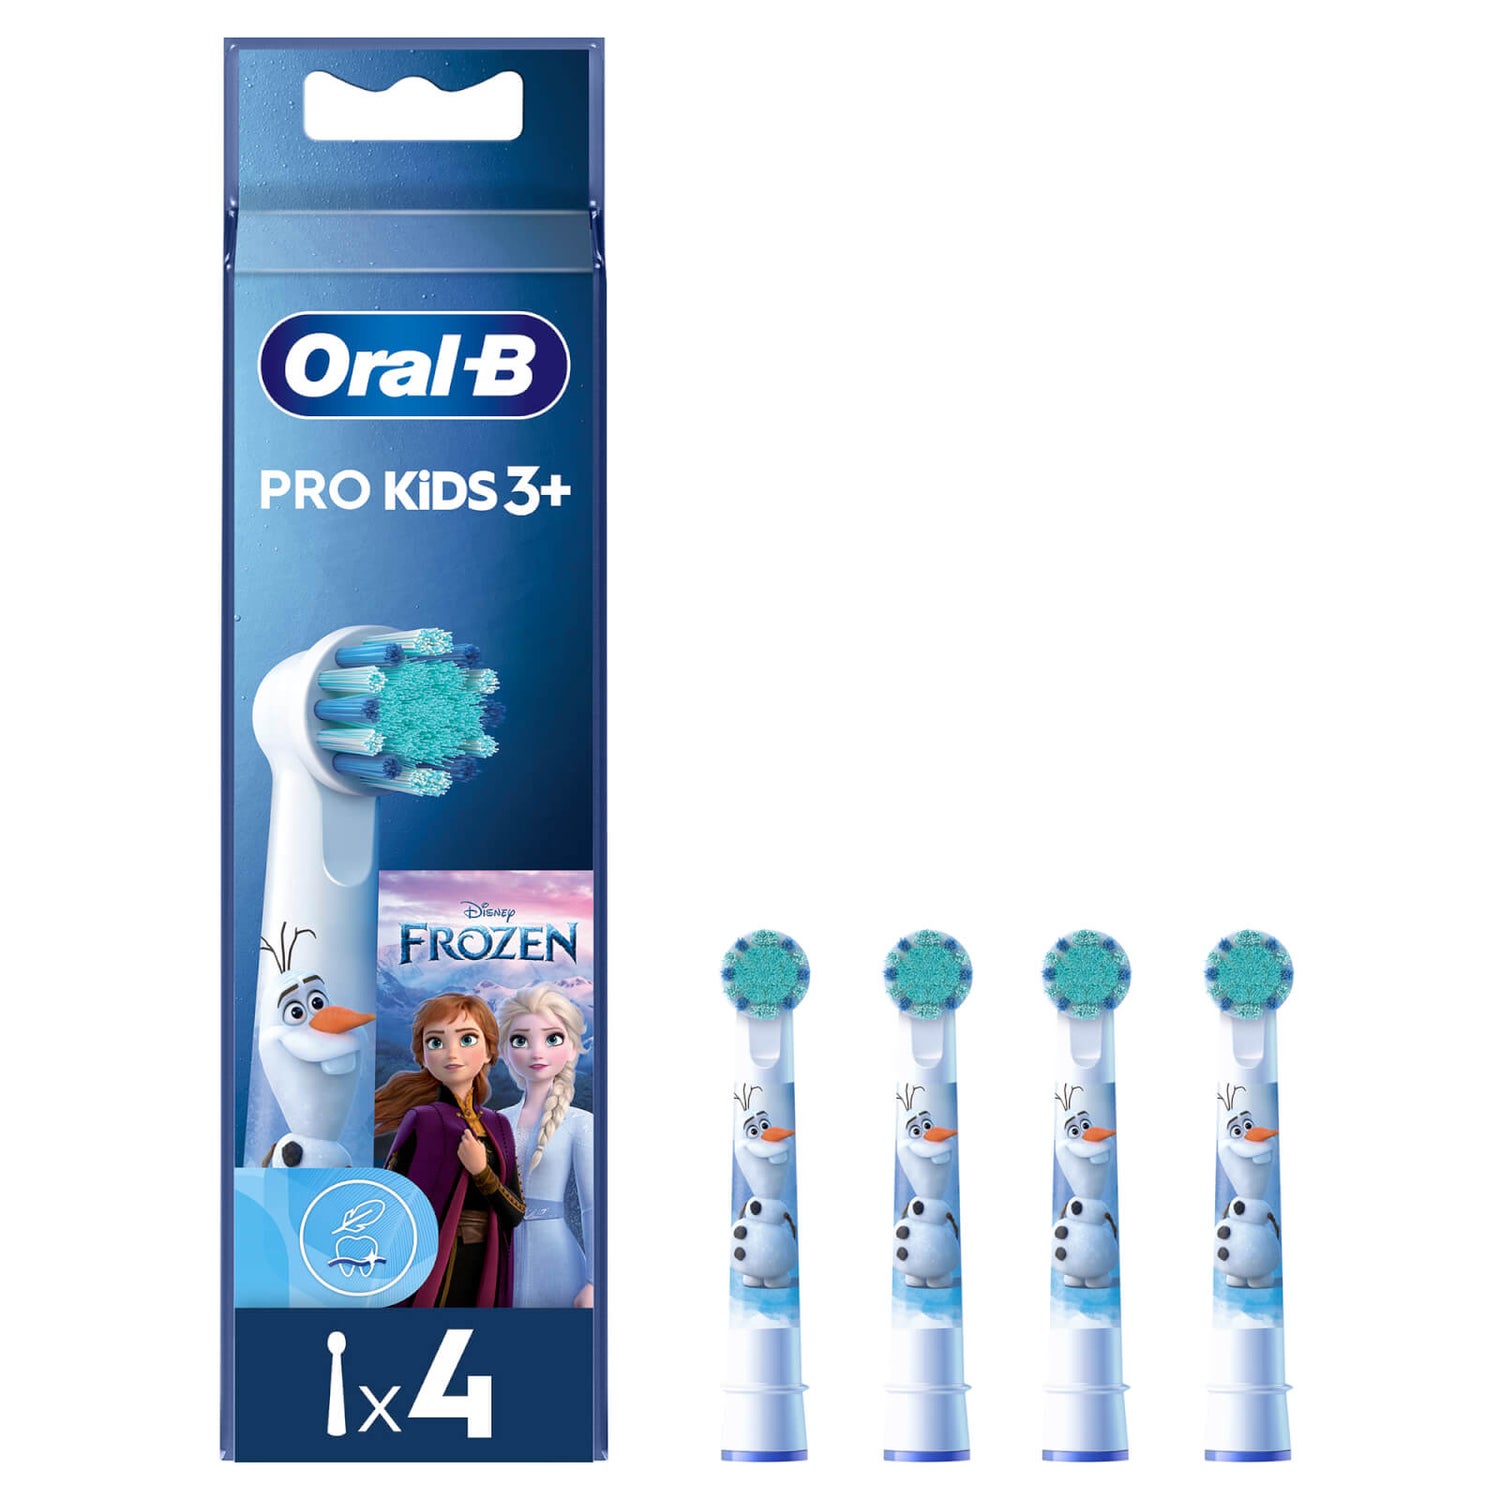 Oral-B Pro Kids Frozen Aufsteckbürsten für elektrische Zahnbürste, 4 Stück, für Kinder ab 3 Jahren